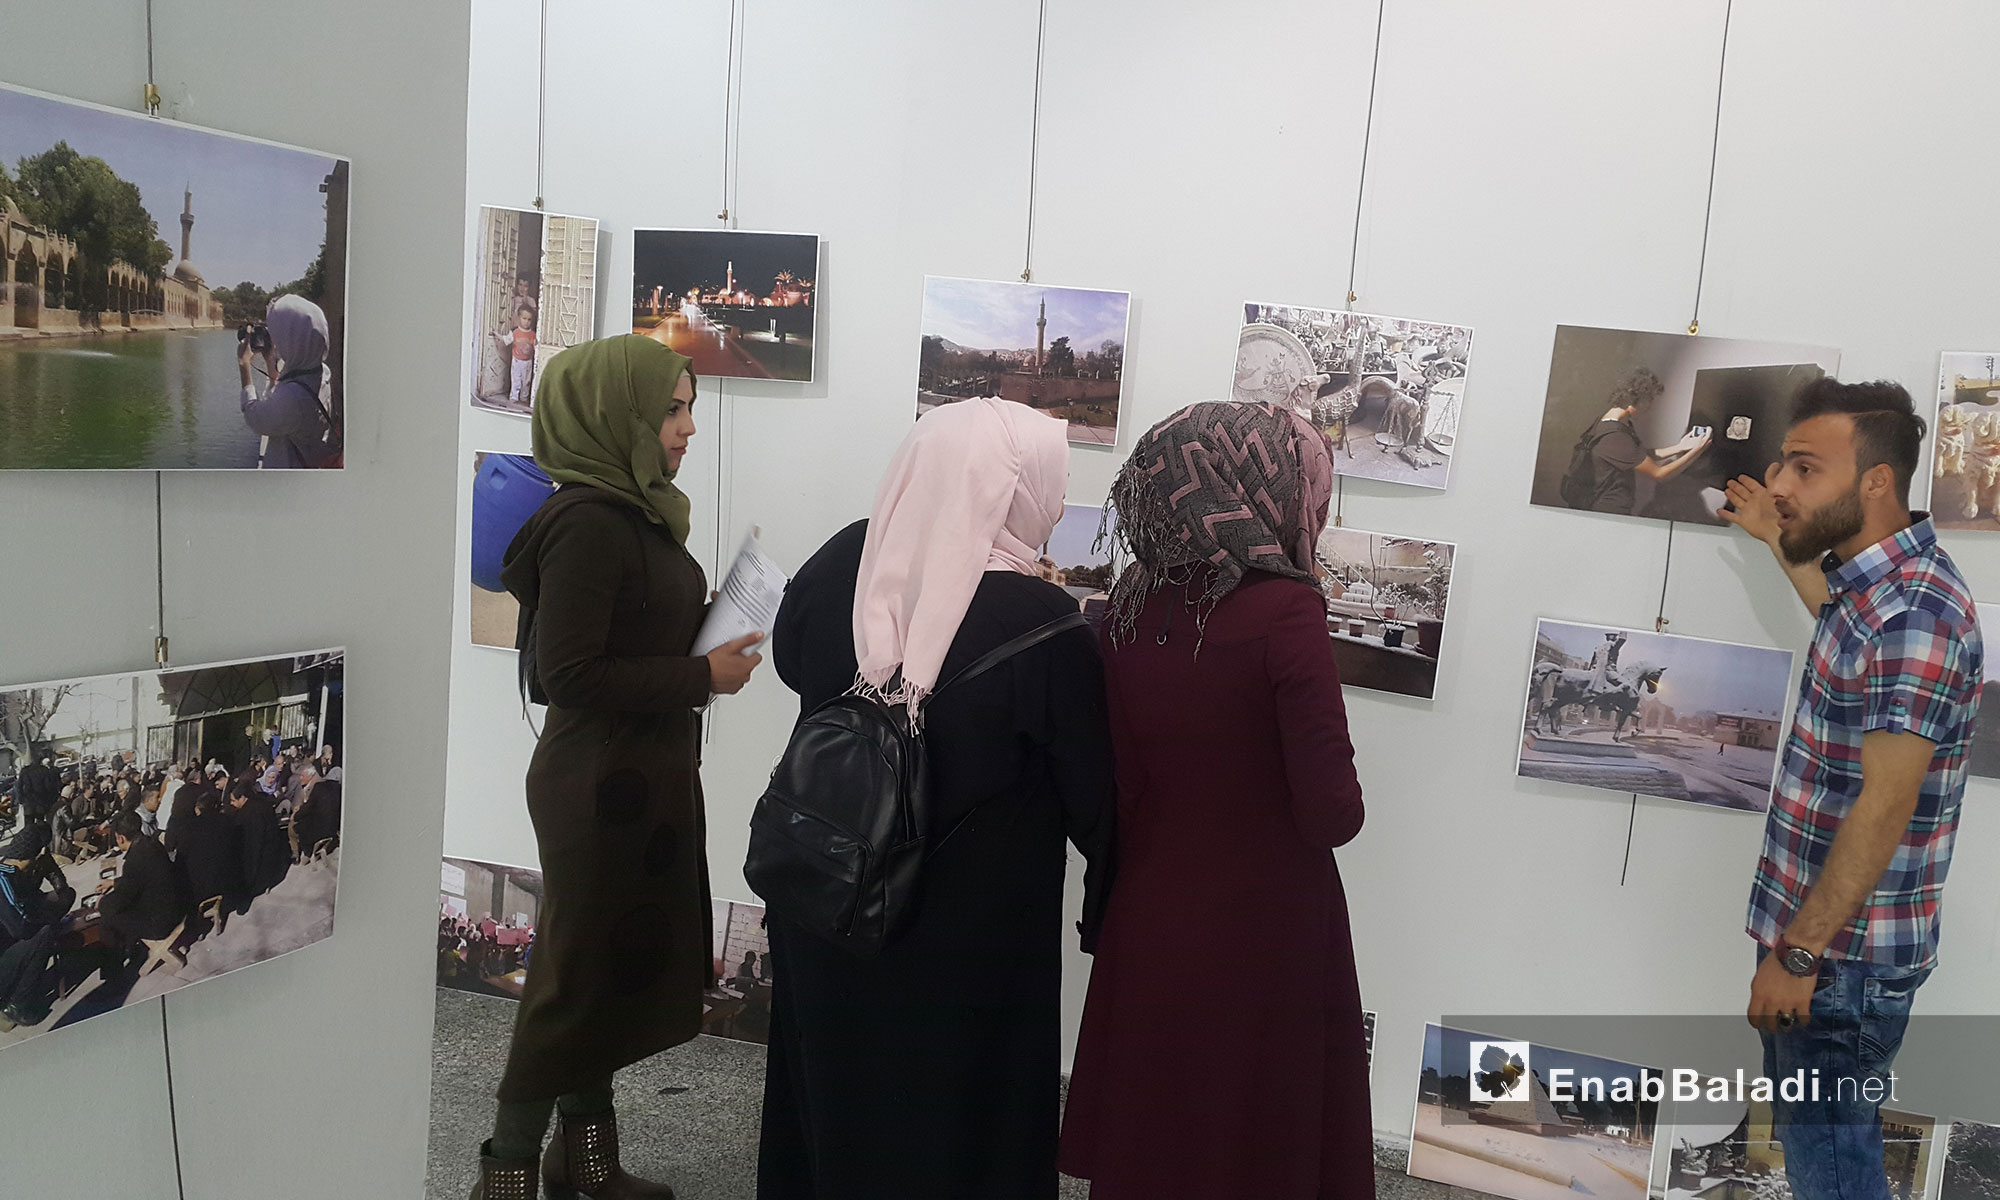 معرض فني بعدسة شباب سوريين يبرز جوانب حياة السوريين في مدينة أورفا التركية - آذار 2018 (عنب بلدي)